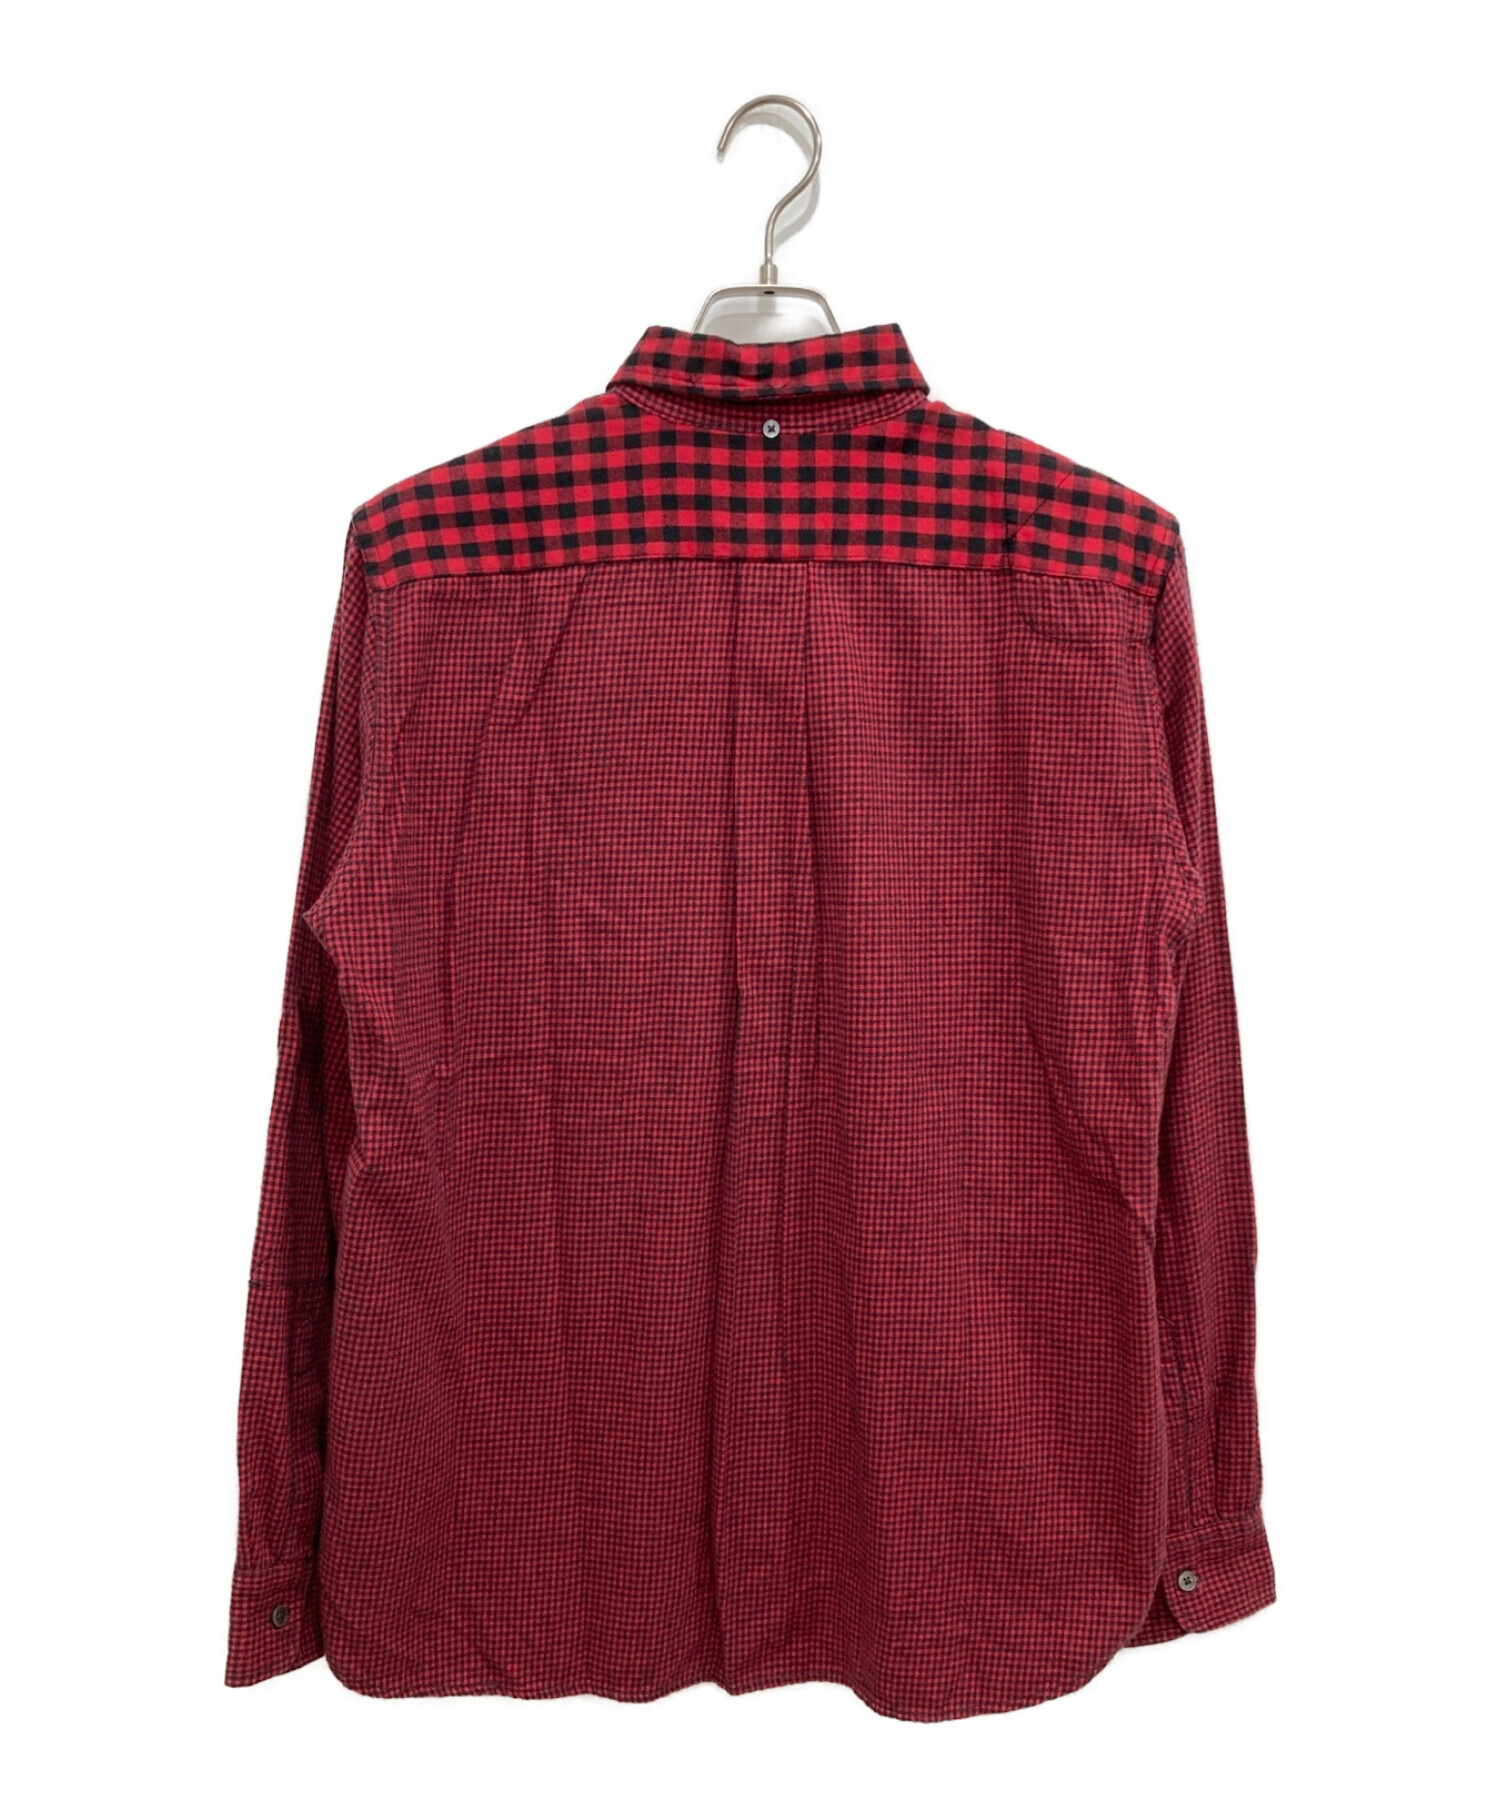 Woolrich Woolen Mills (ウールリッチウーレンミルズ) クレイジーパターンネルシャツ レッド サイズ:M